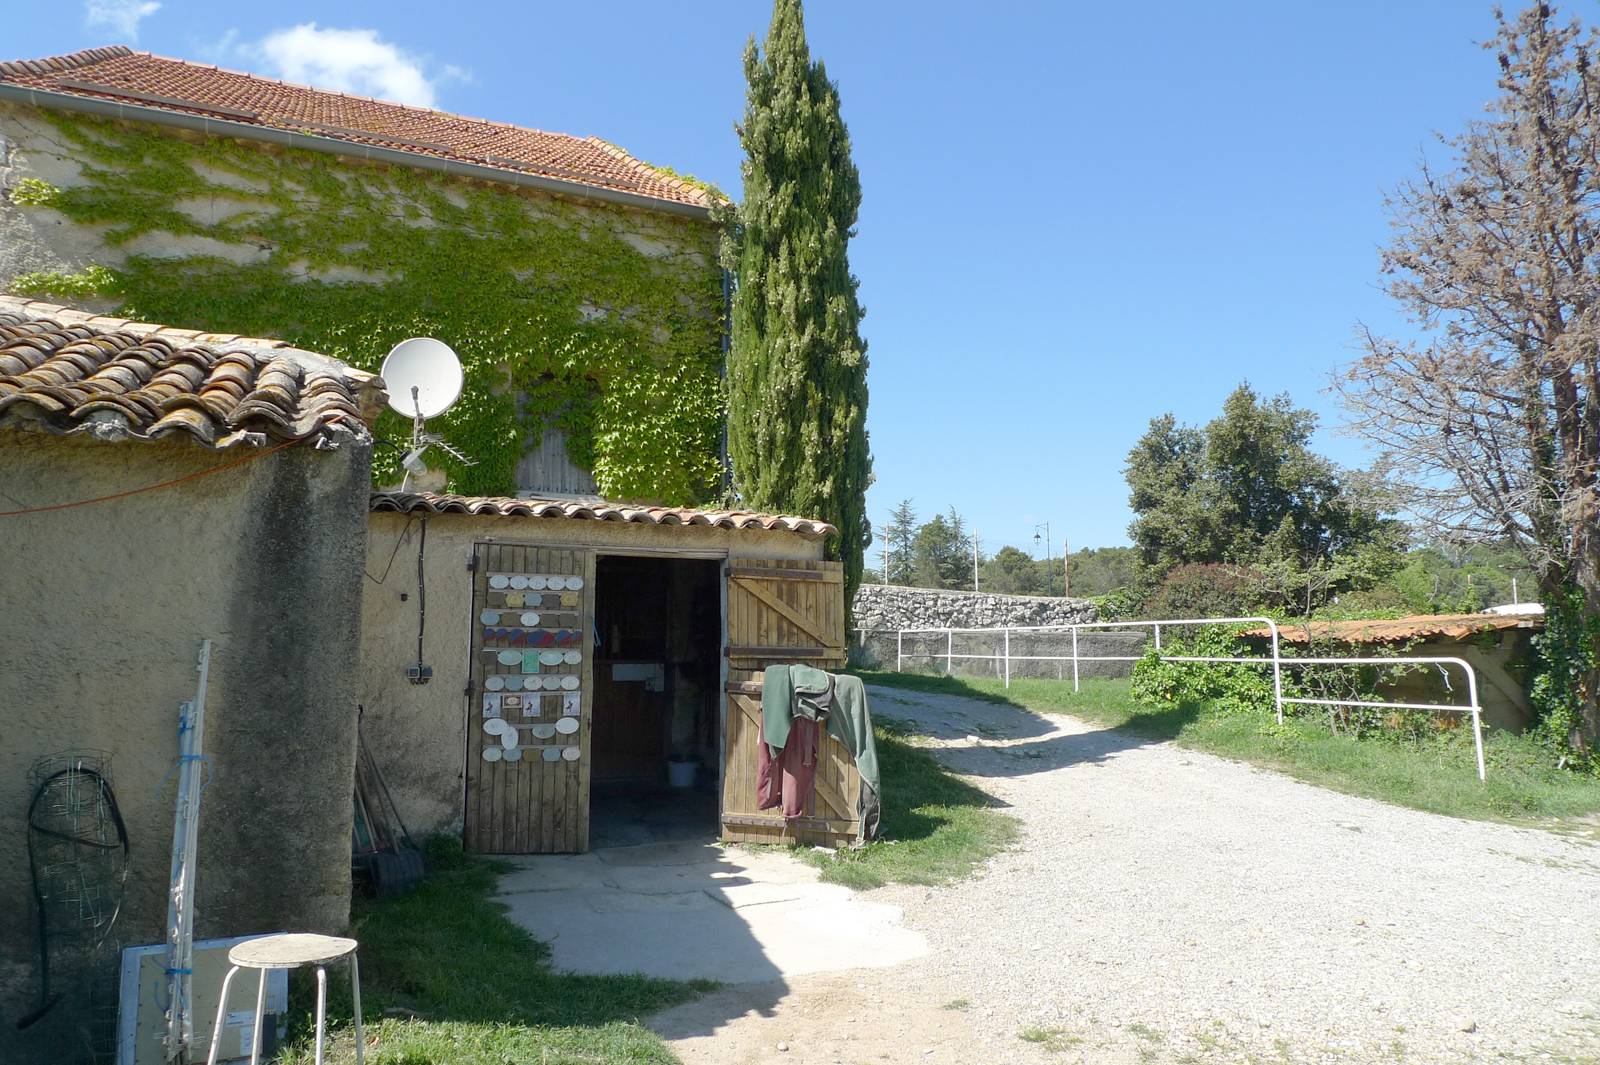 A vendre Mas de village Drôme Provençale  PAR NOS SOINS A vendre Mas de village Drôme Provençale VENDU  PAR NOS SOINS